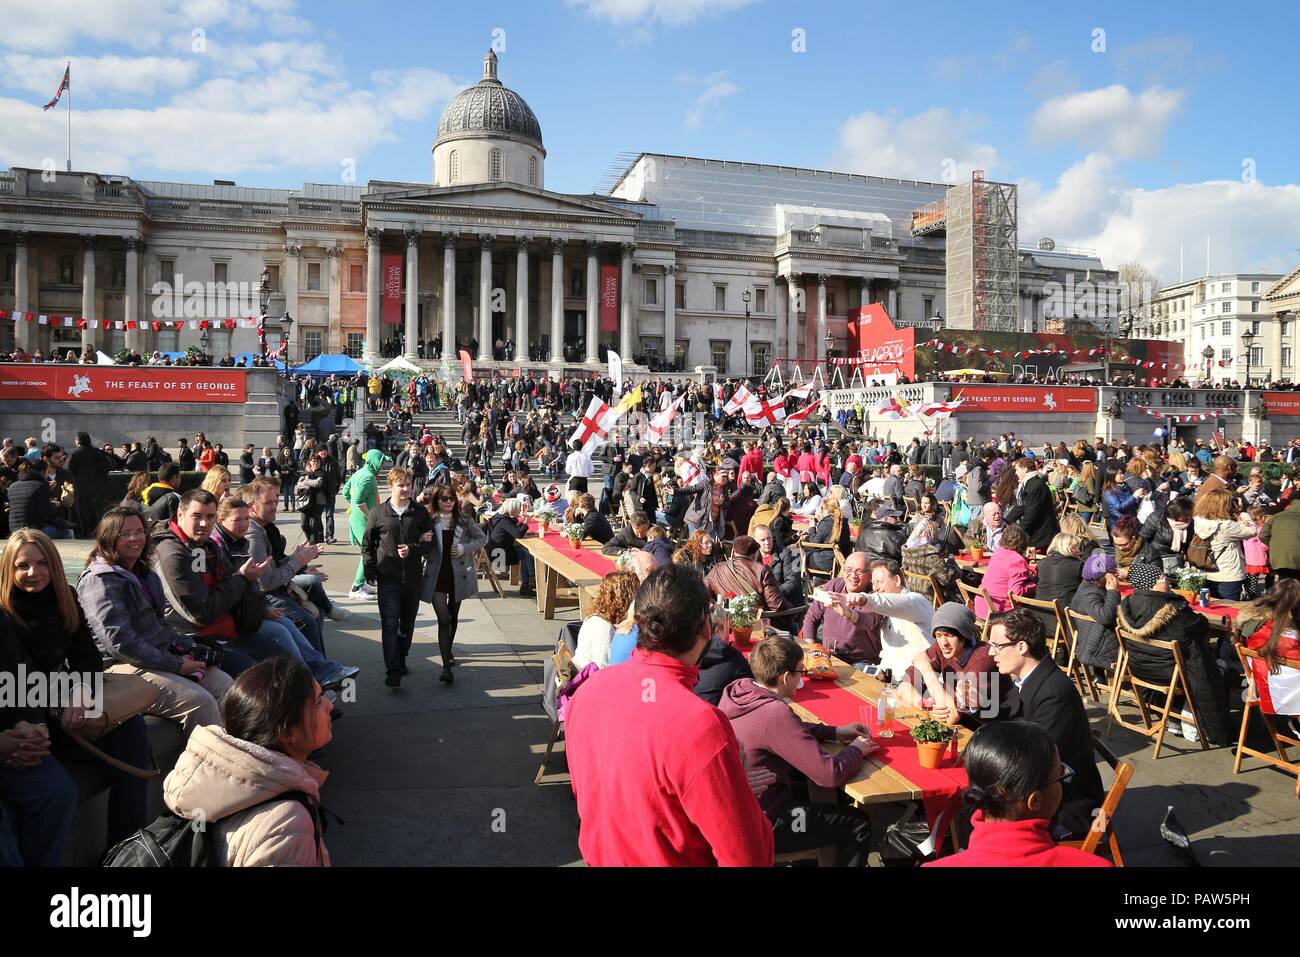 Londres, Royaume-Uni - 23 avril 2016 : visite de Trafalgar Square de Saint George's Day à Londres, au Royaume-Uni. Saint Georges est le saint patron de l'Angleterre. Banque D'Images